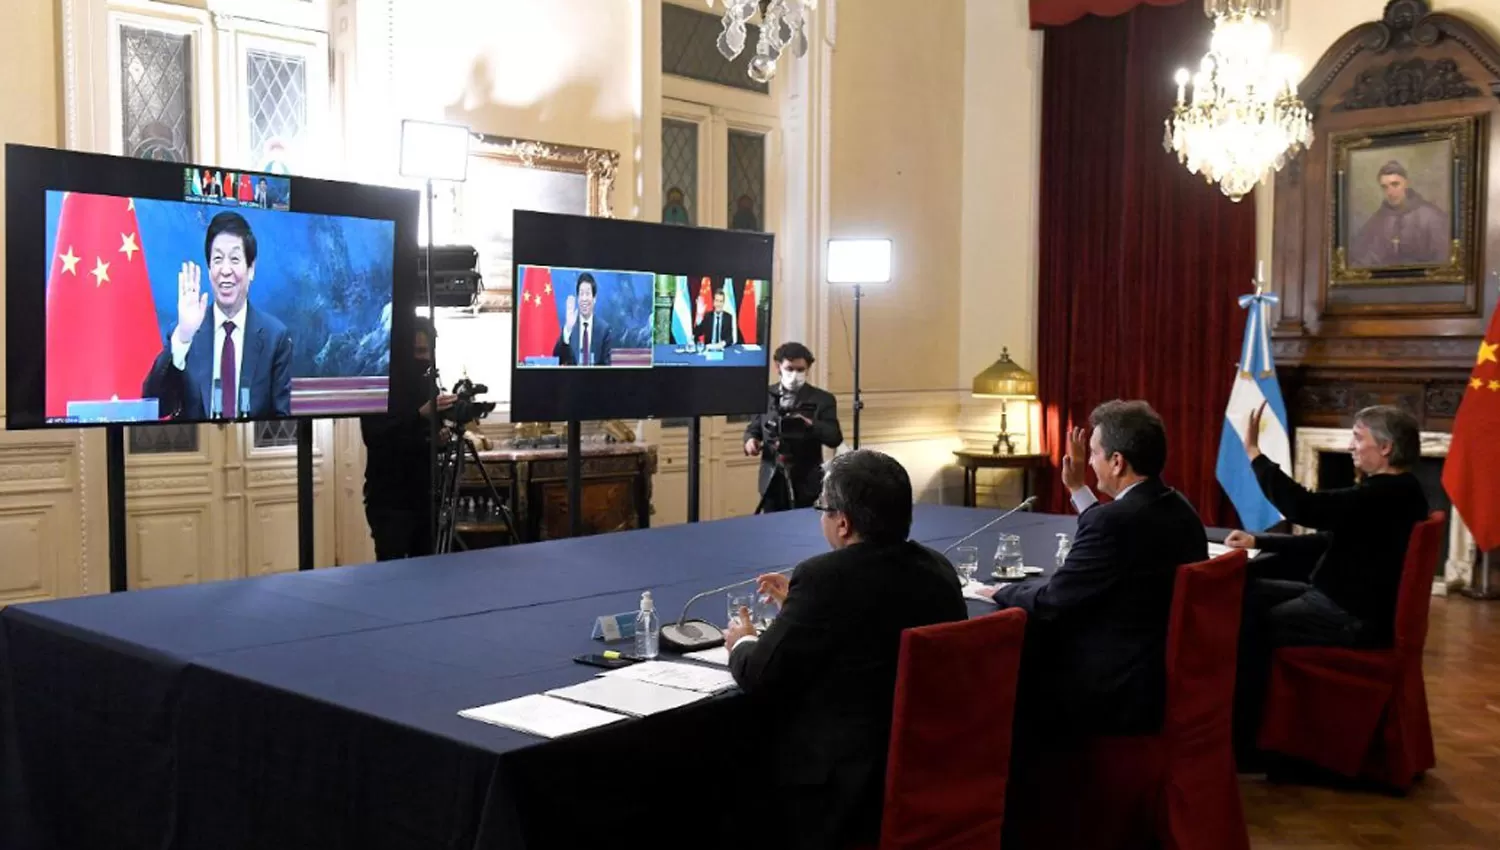 POR VIDEO. Massa y Kirchner mantuvieron una charla mediante video conferencia con las autoridades parlamentarias chinas.